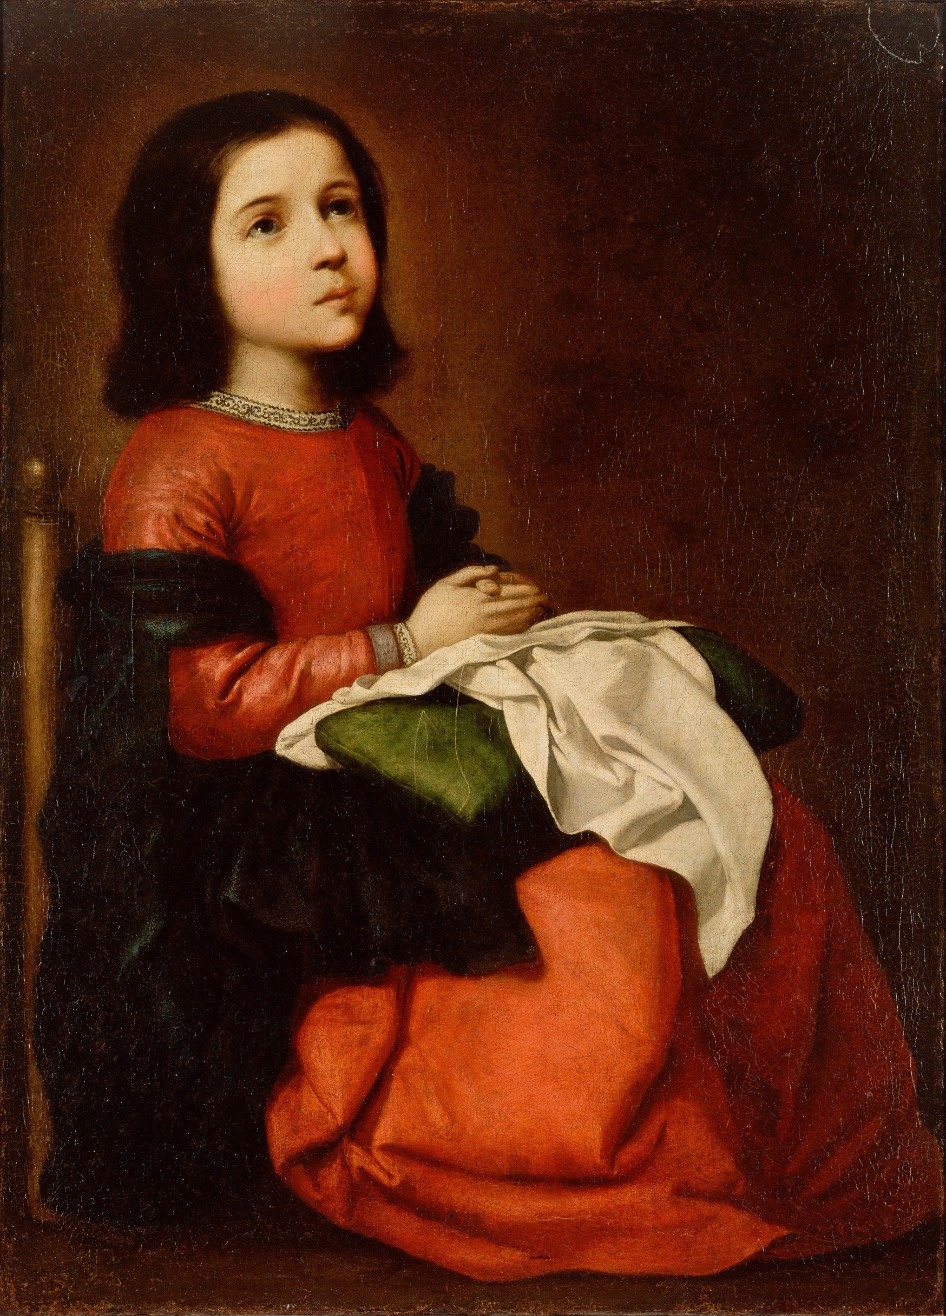 The Virgin Mary as a Child Praying, Francisco de Zurbaran, c. 1658-1660